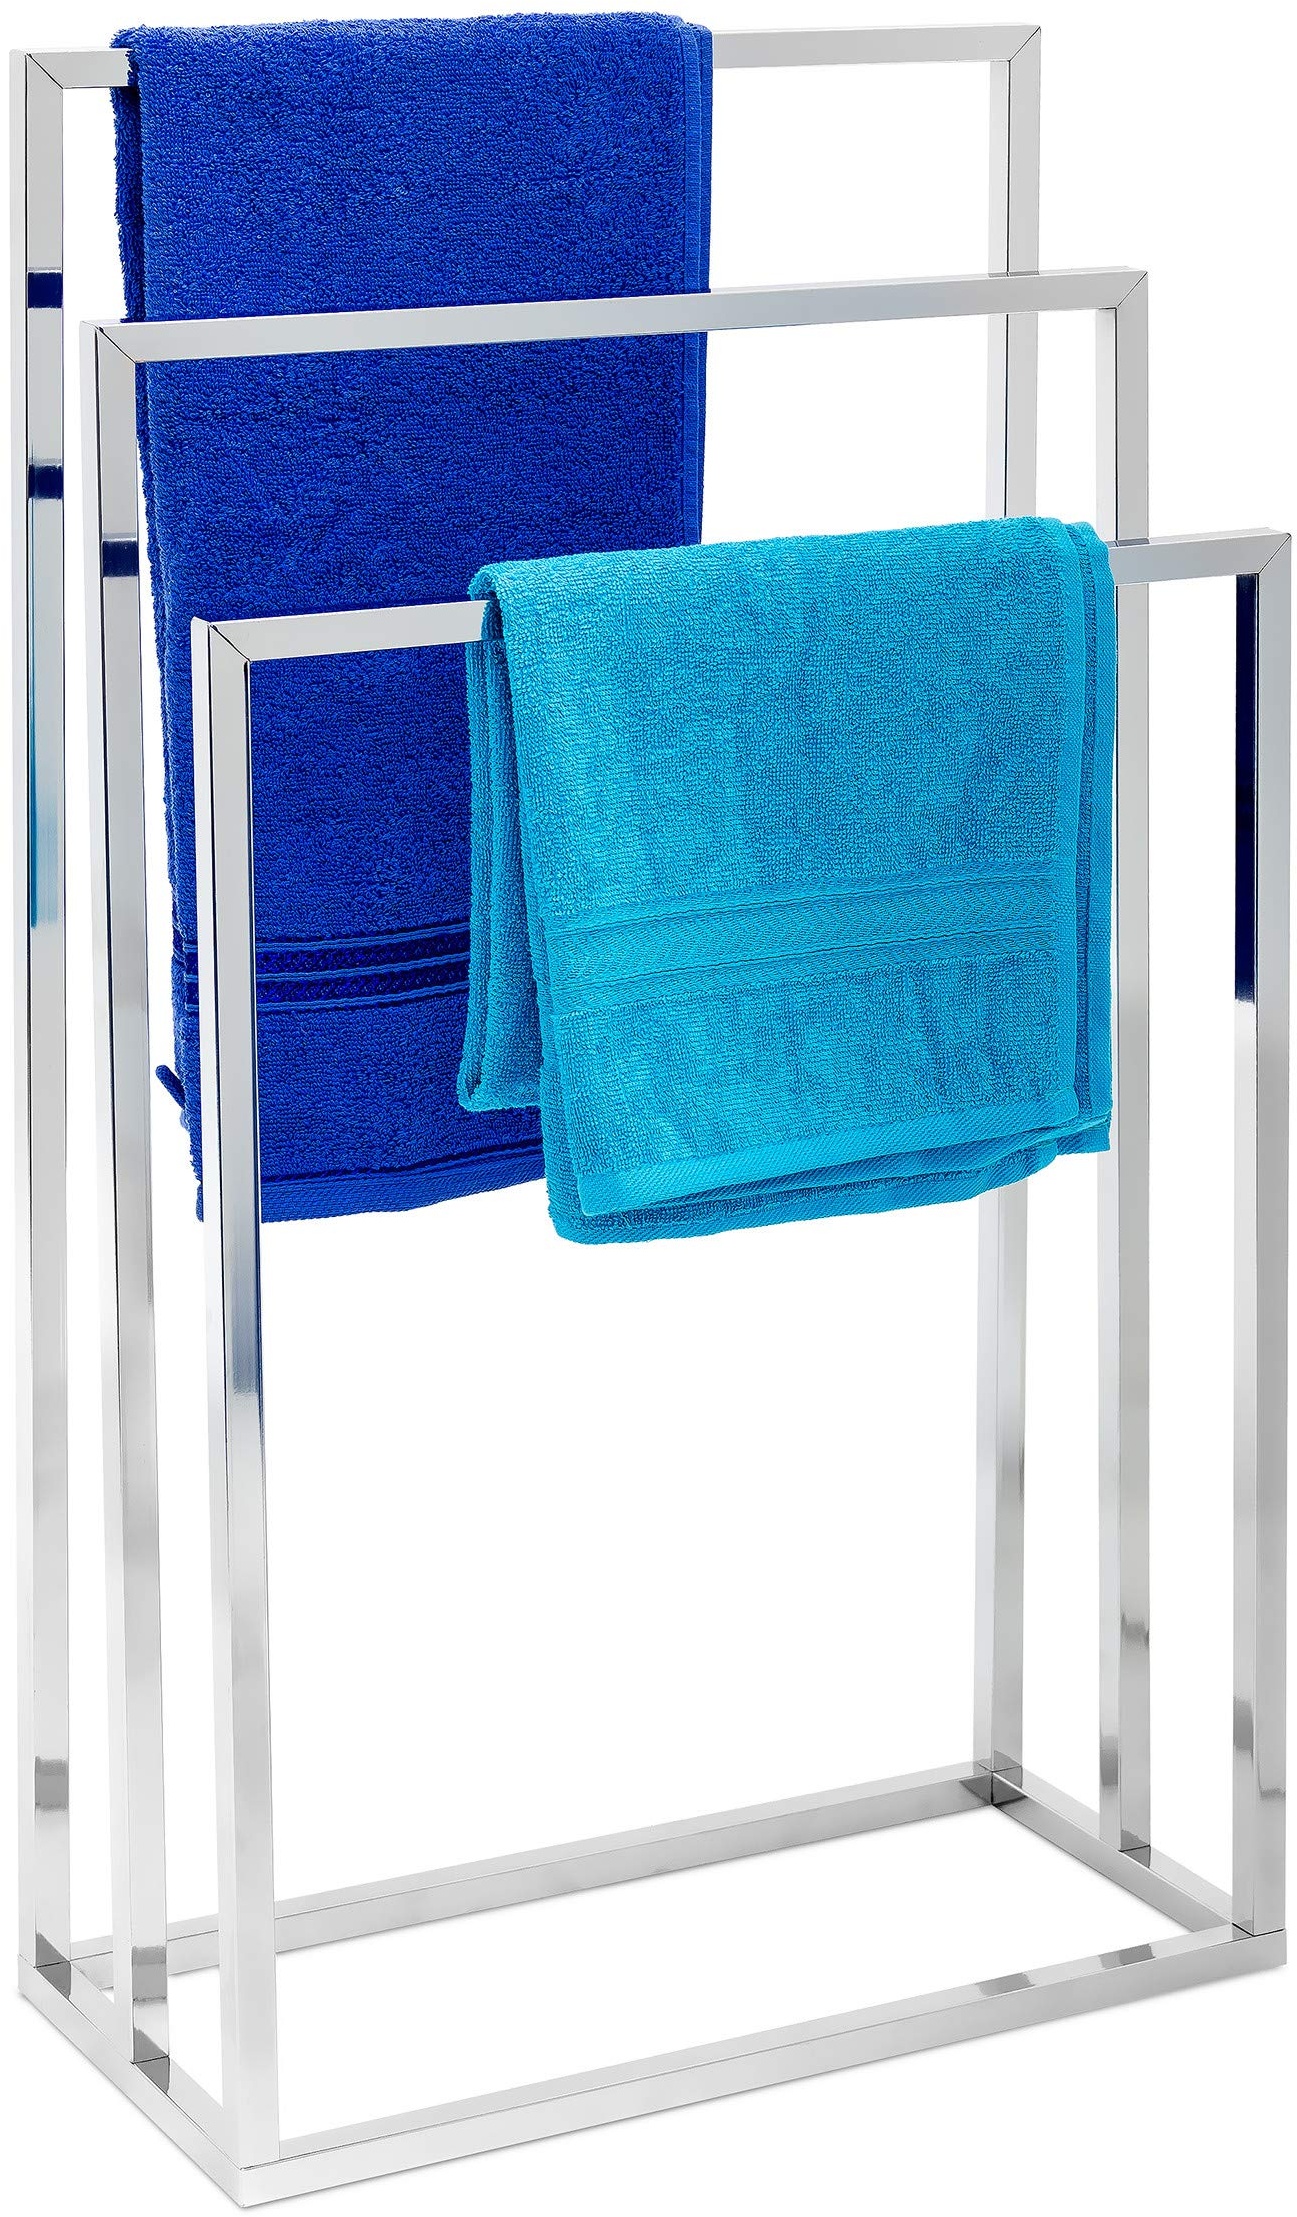 Relaxdays Handtuchständer H x B x T: ca. 82,5 x 46 x 21 cm Handtuchhalter aus verchromtem Metall in Edelstahl-Optik Badehandtuchhalter mit 3 Handtuchstangen als Badaccessoire und Kleiderbutler, silber